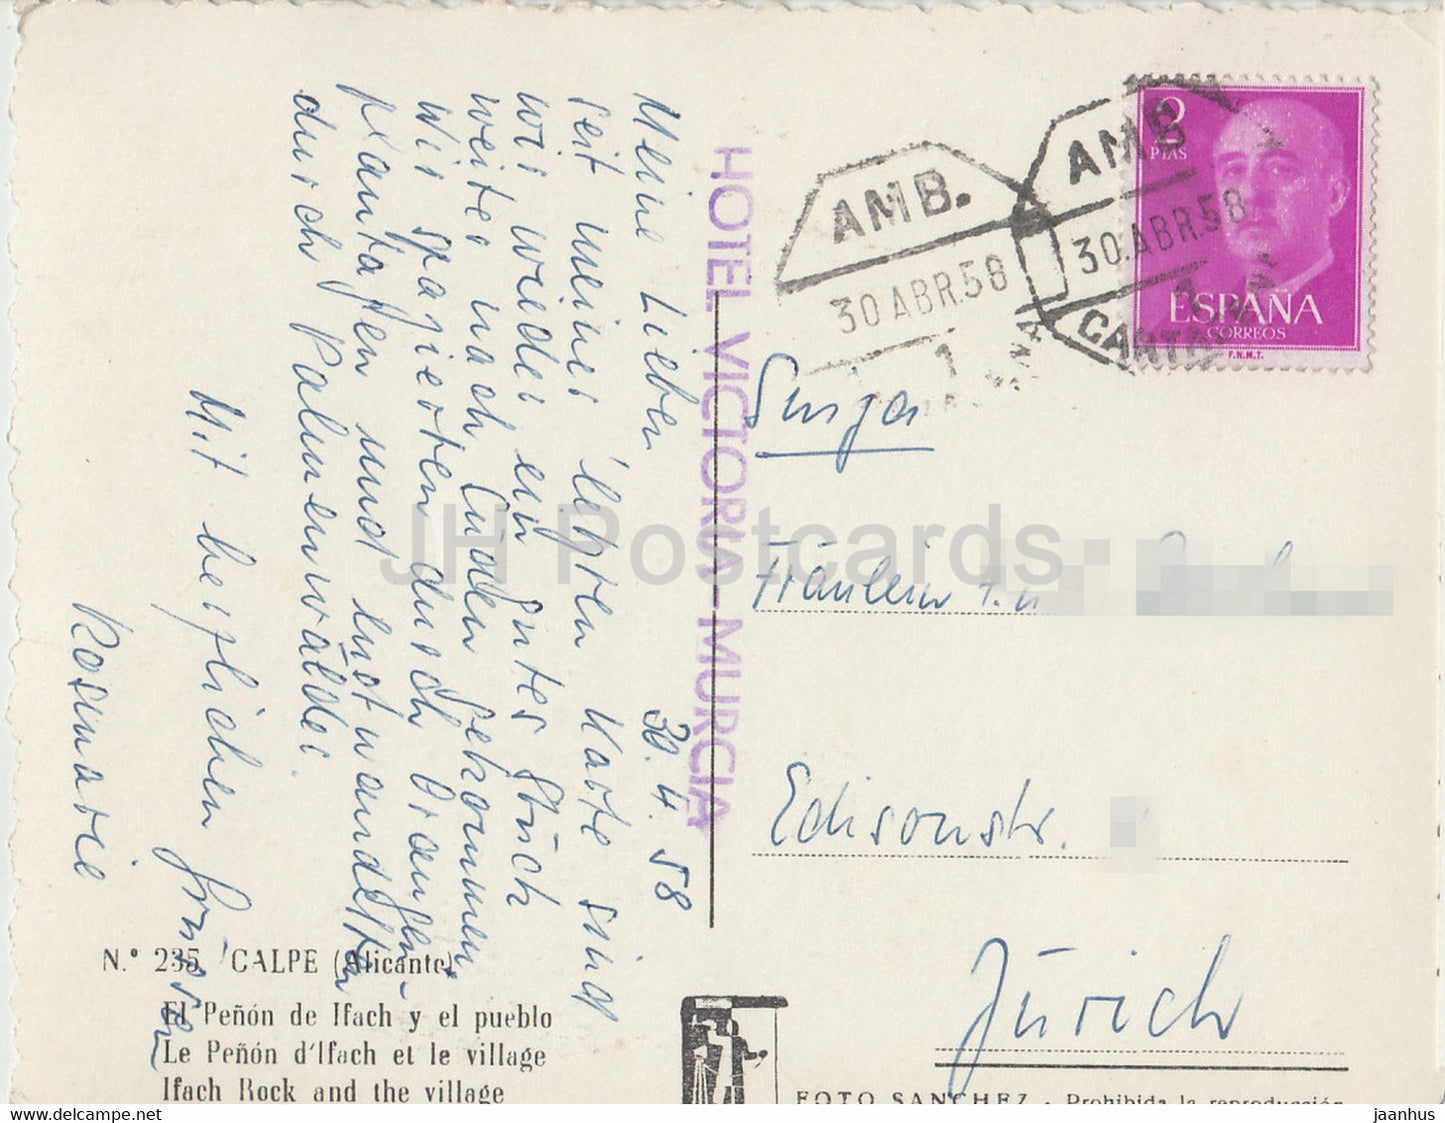 Calpe - El Penon de lfach y el pueblo - Ifach Rock und das Dorf - alte Postkarte - 1958 - Spanien - gebraucht